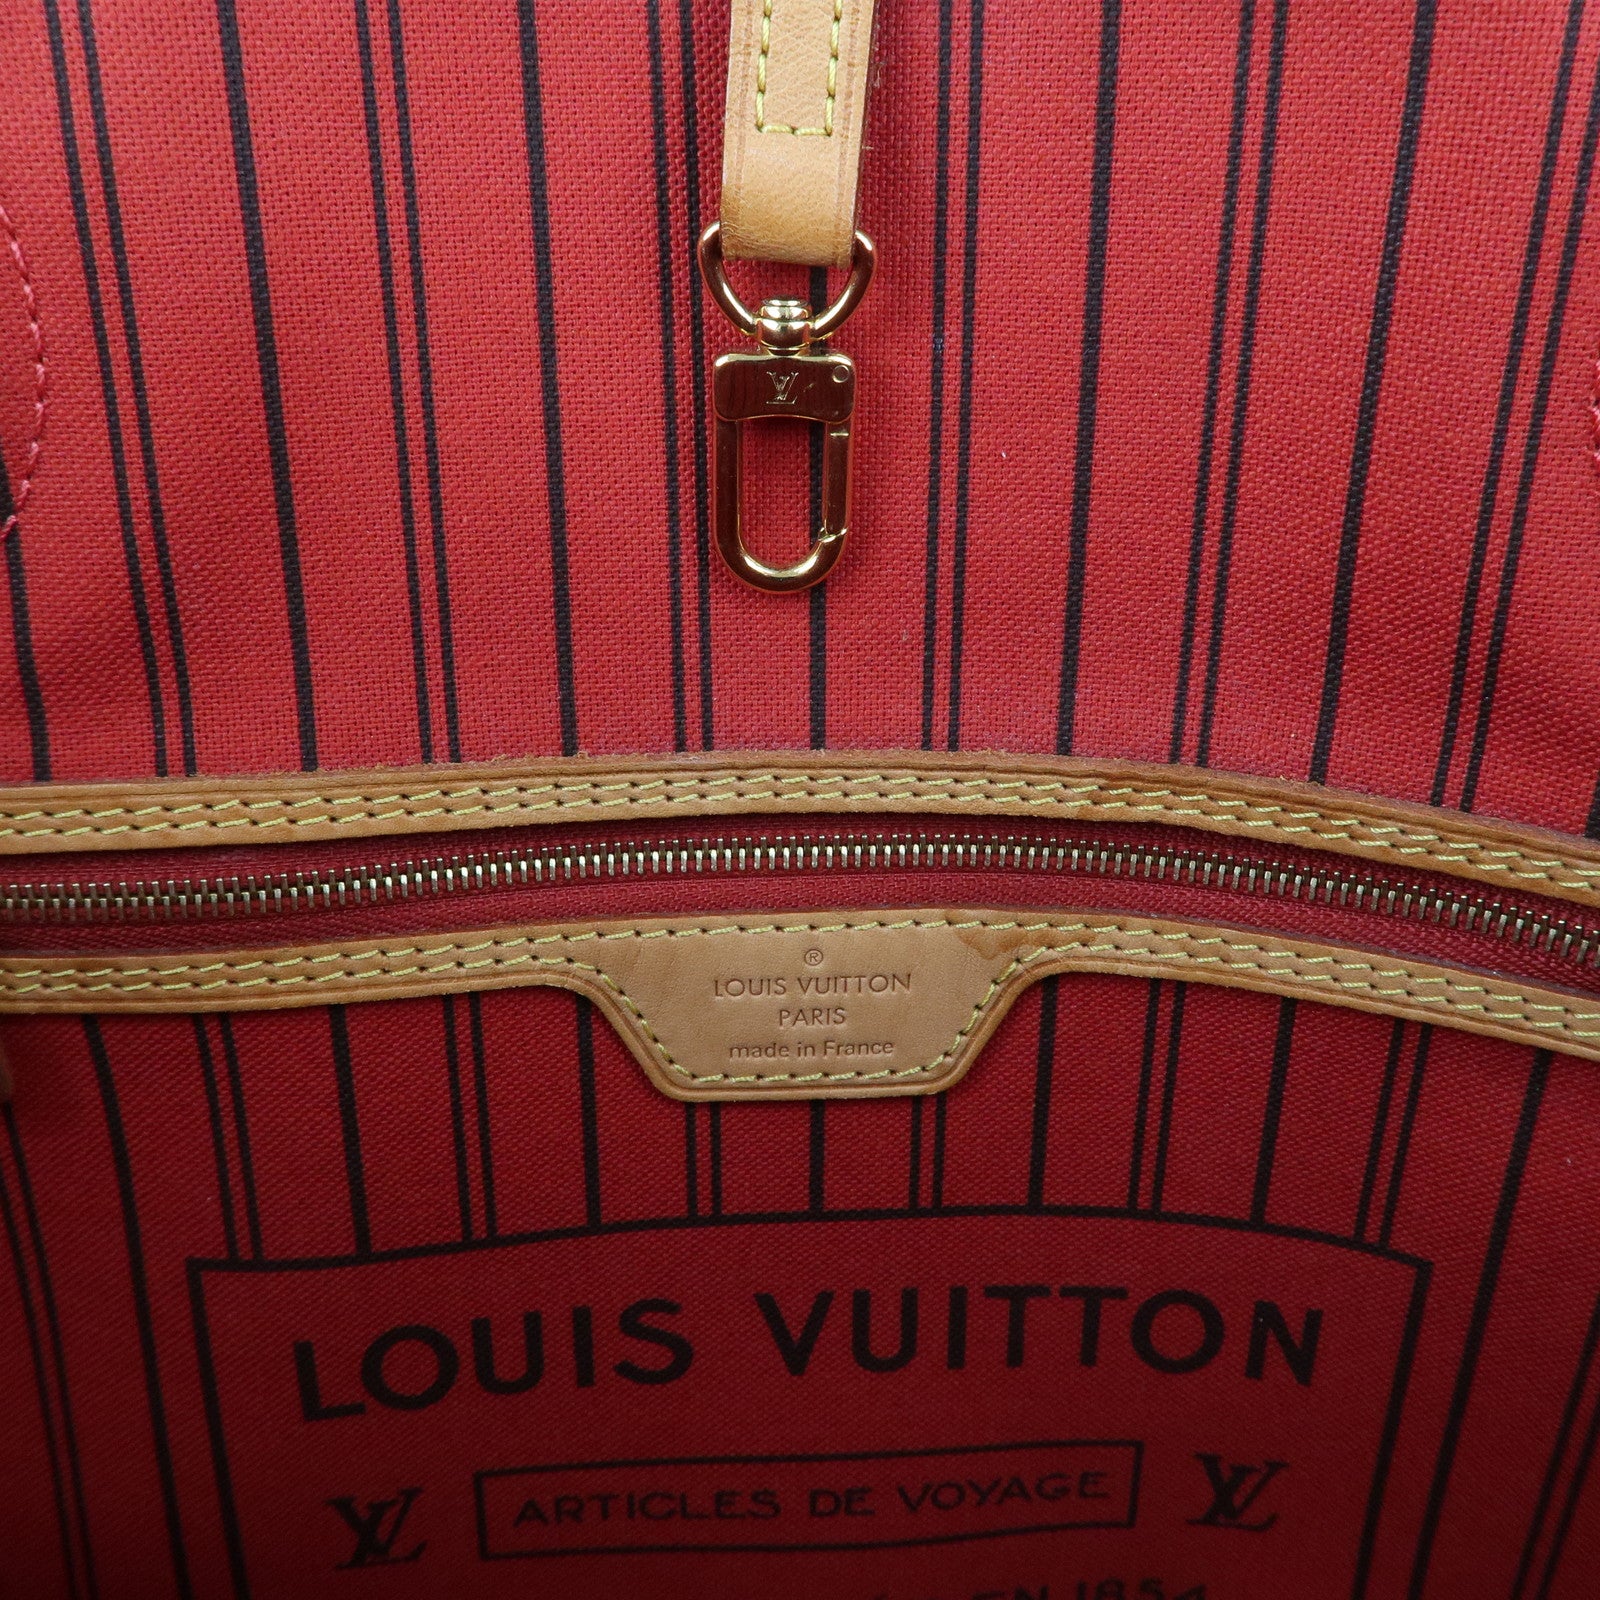 Louis Vuitton Monogram Articles De Voyage Neverfull MM - Brown